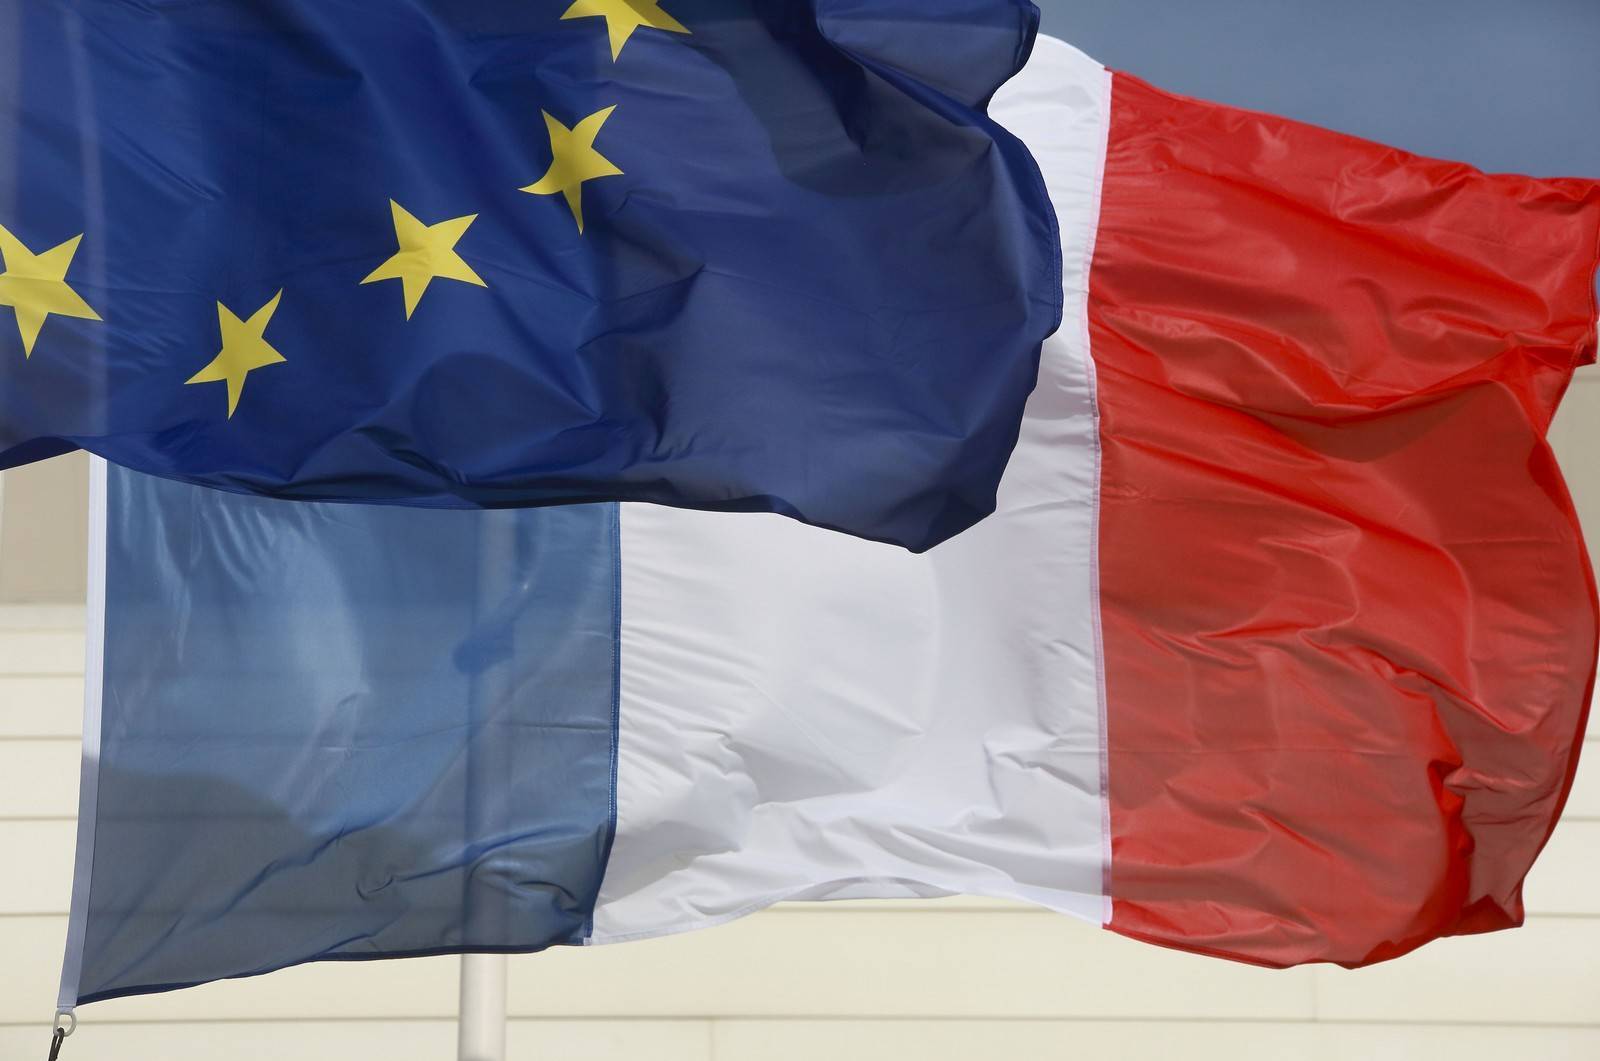 L'Europe, principal partenaire commercial de la France,
Auteurs  : LODI Franck/SIPA,
Numéro de reportage  : 00979755_000001.